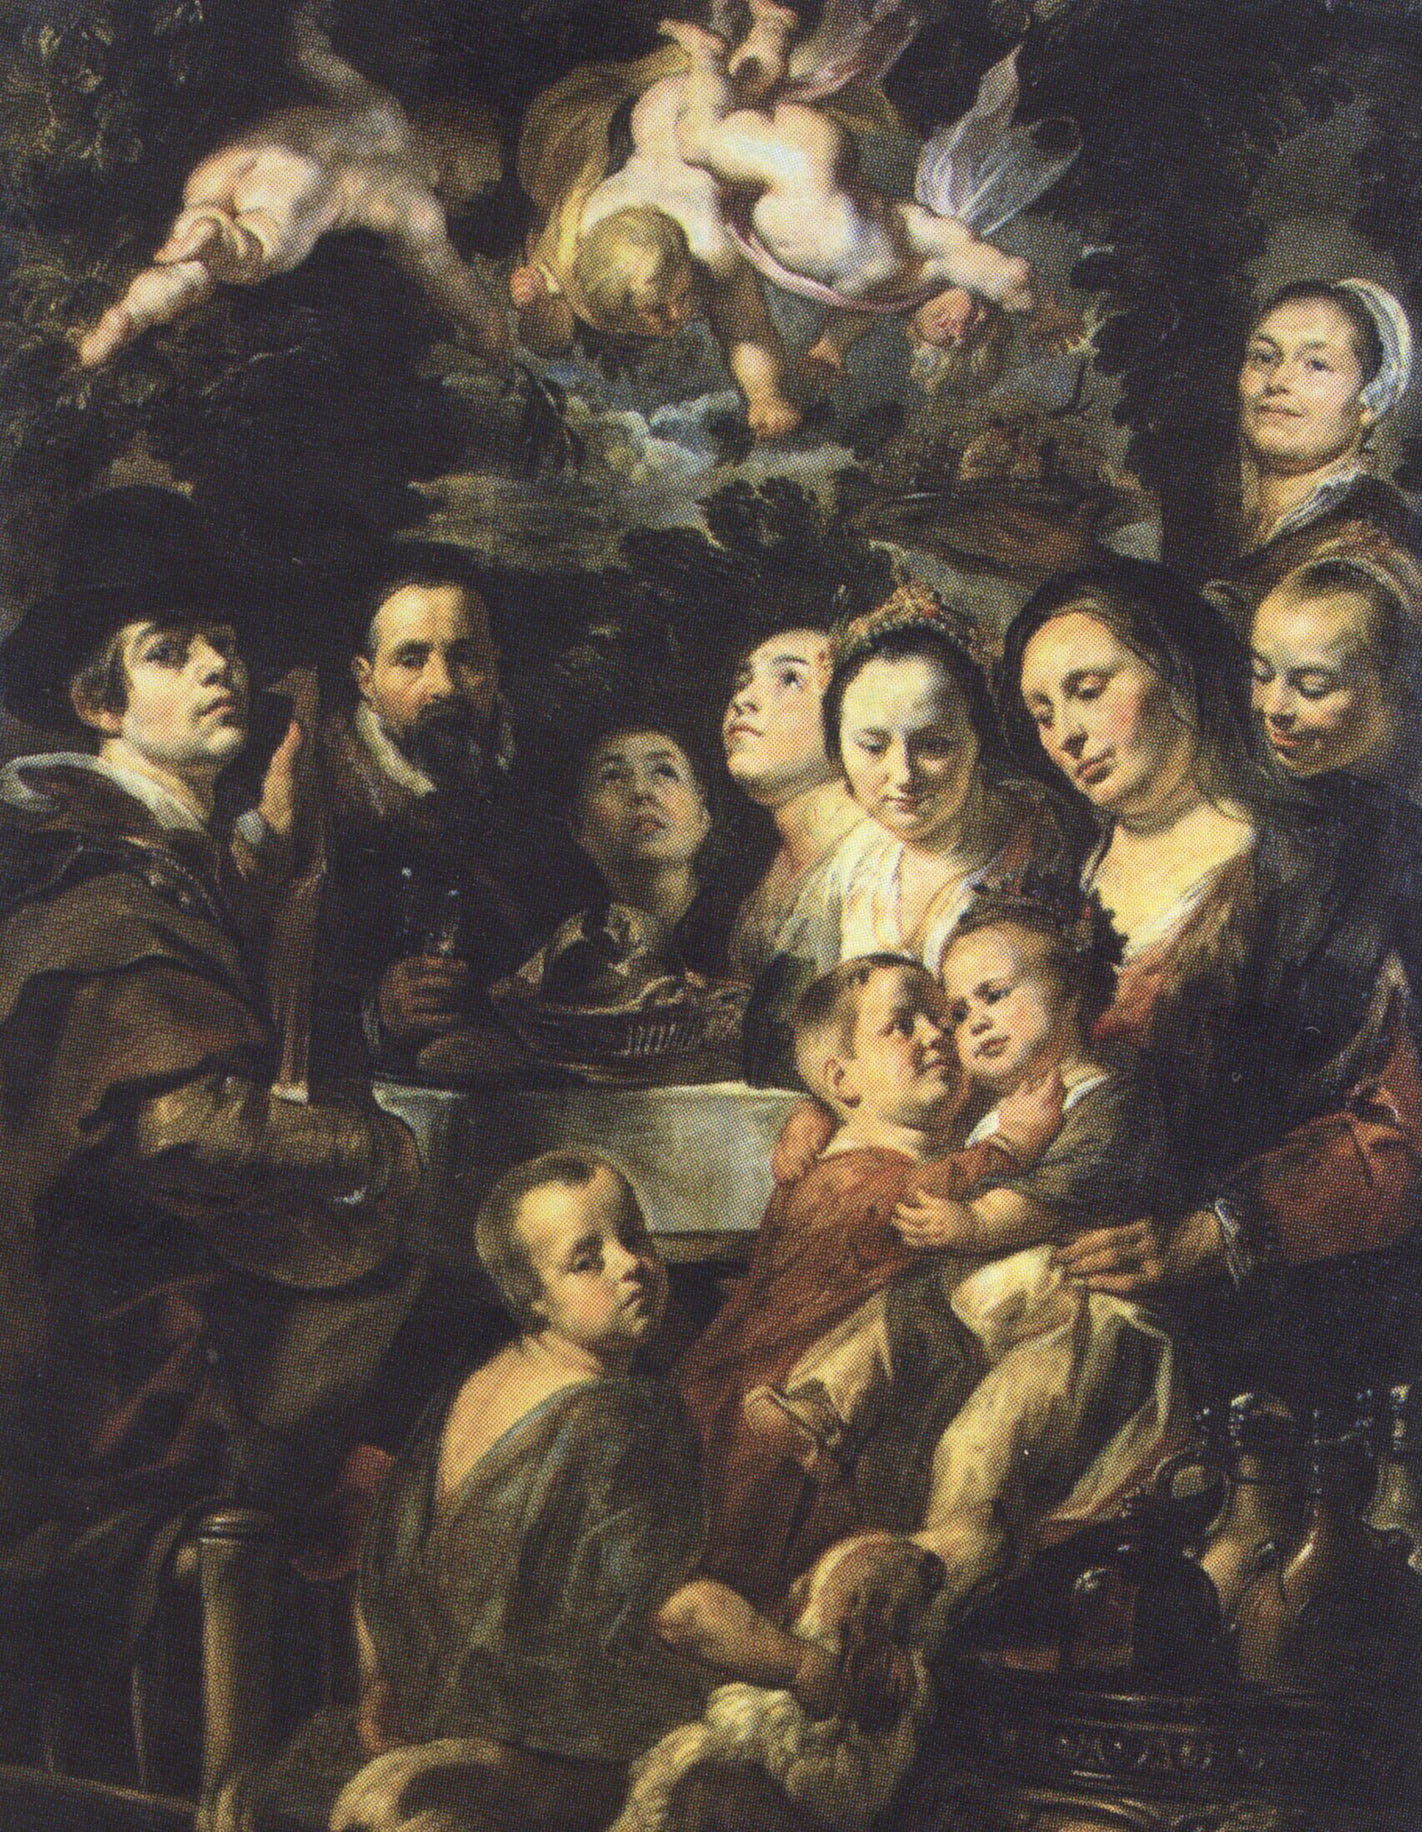 Якоб Йорданс. Автопортрет с родителями, сёстрами и братьями. Около 1615.